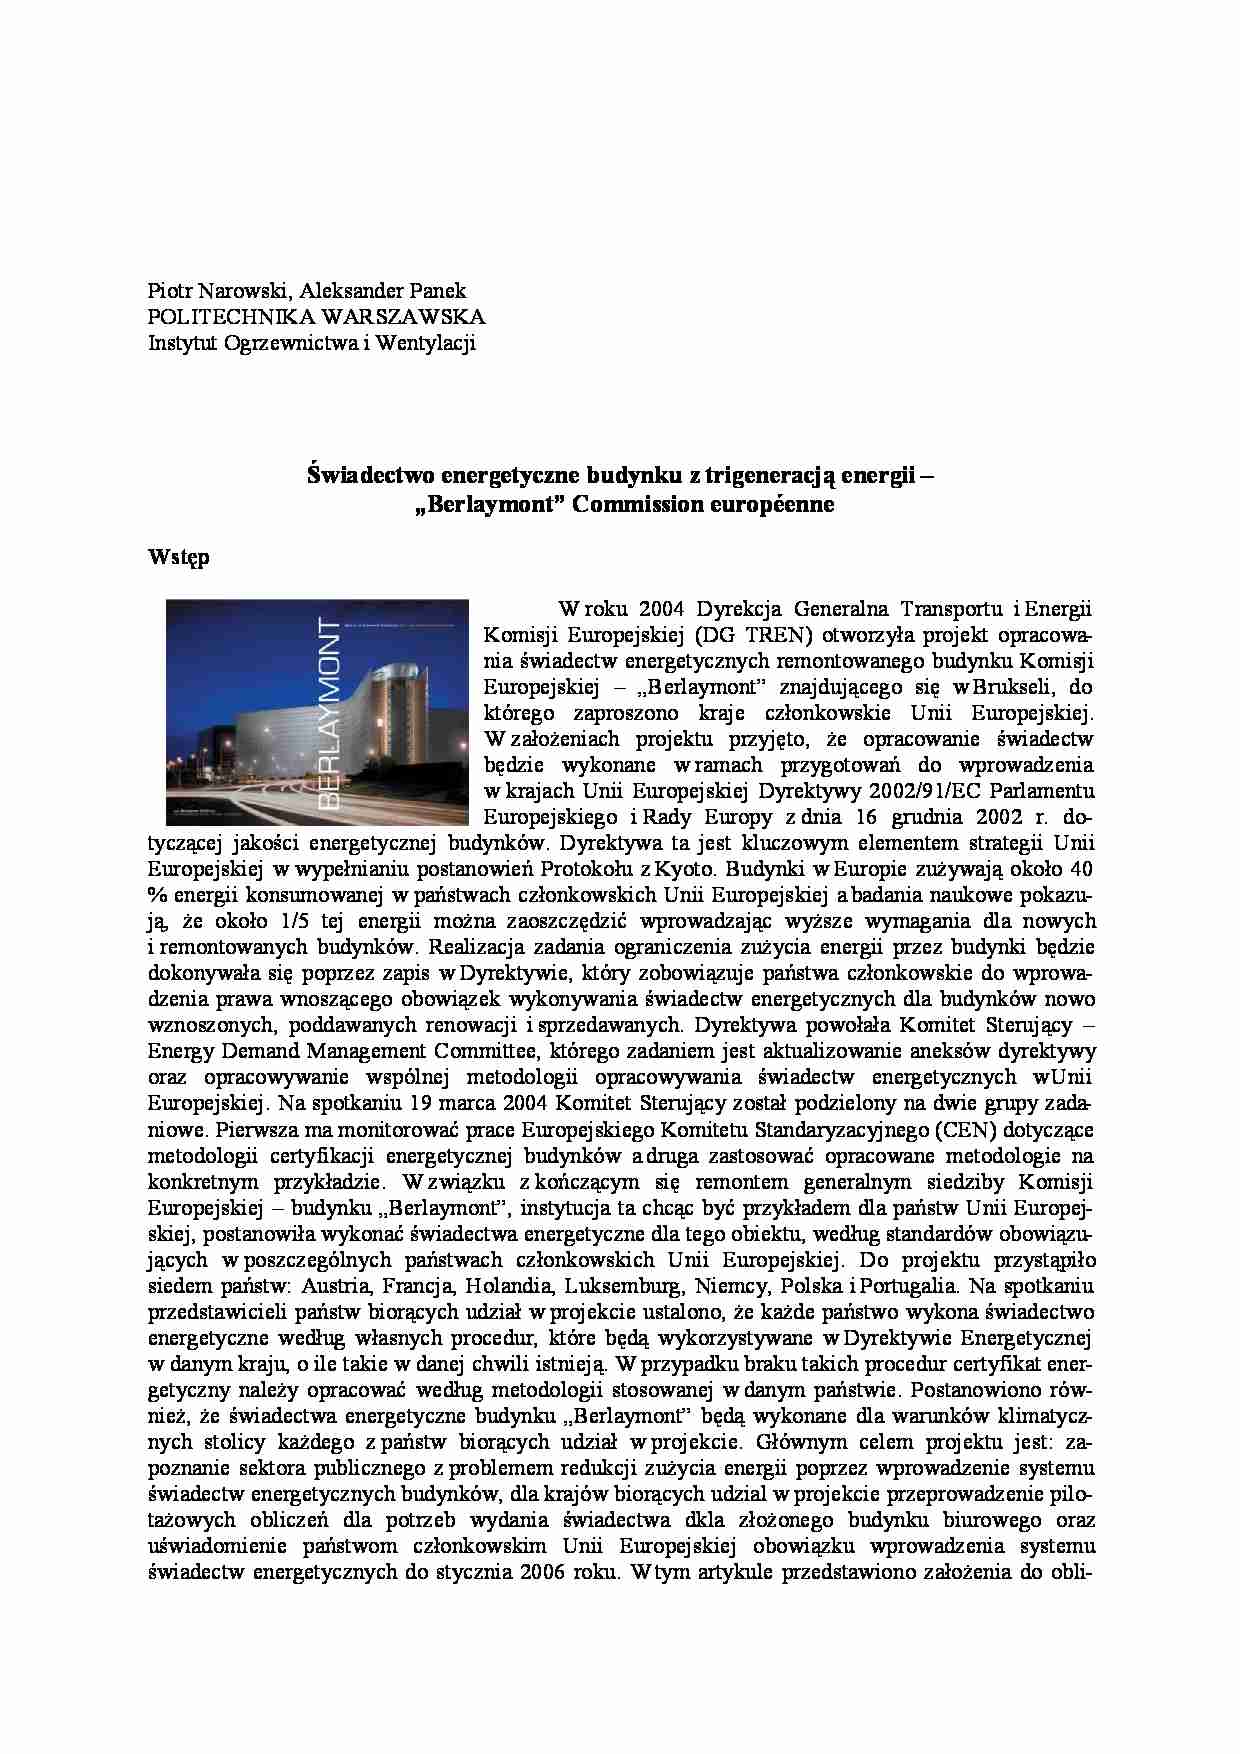 Świadectwo enegrytyczne budynku - certyfikat berlaymont - strona 1